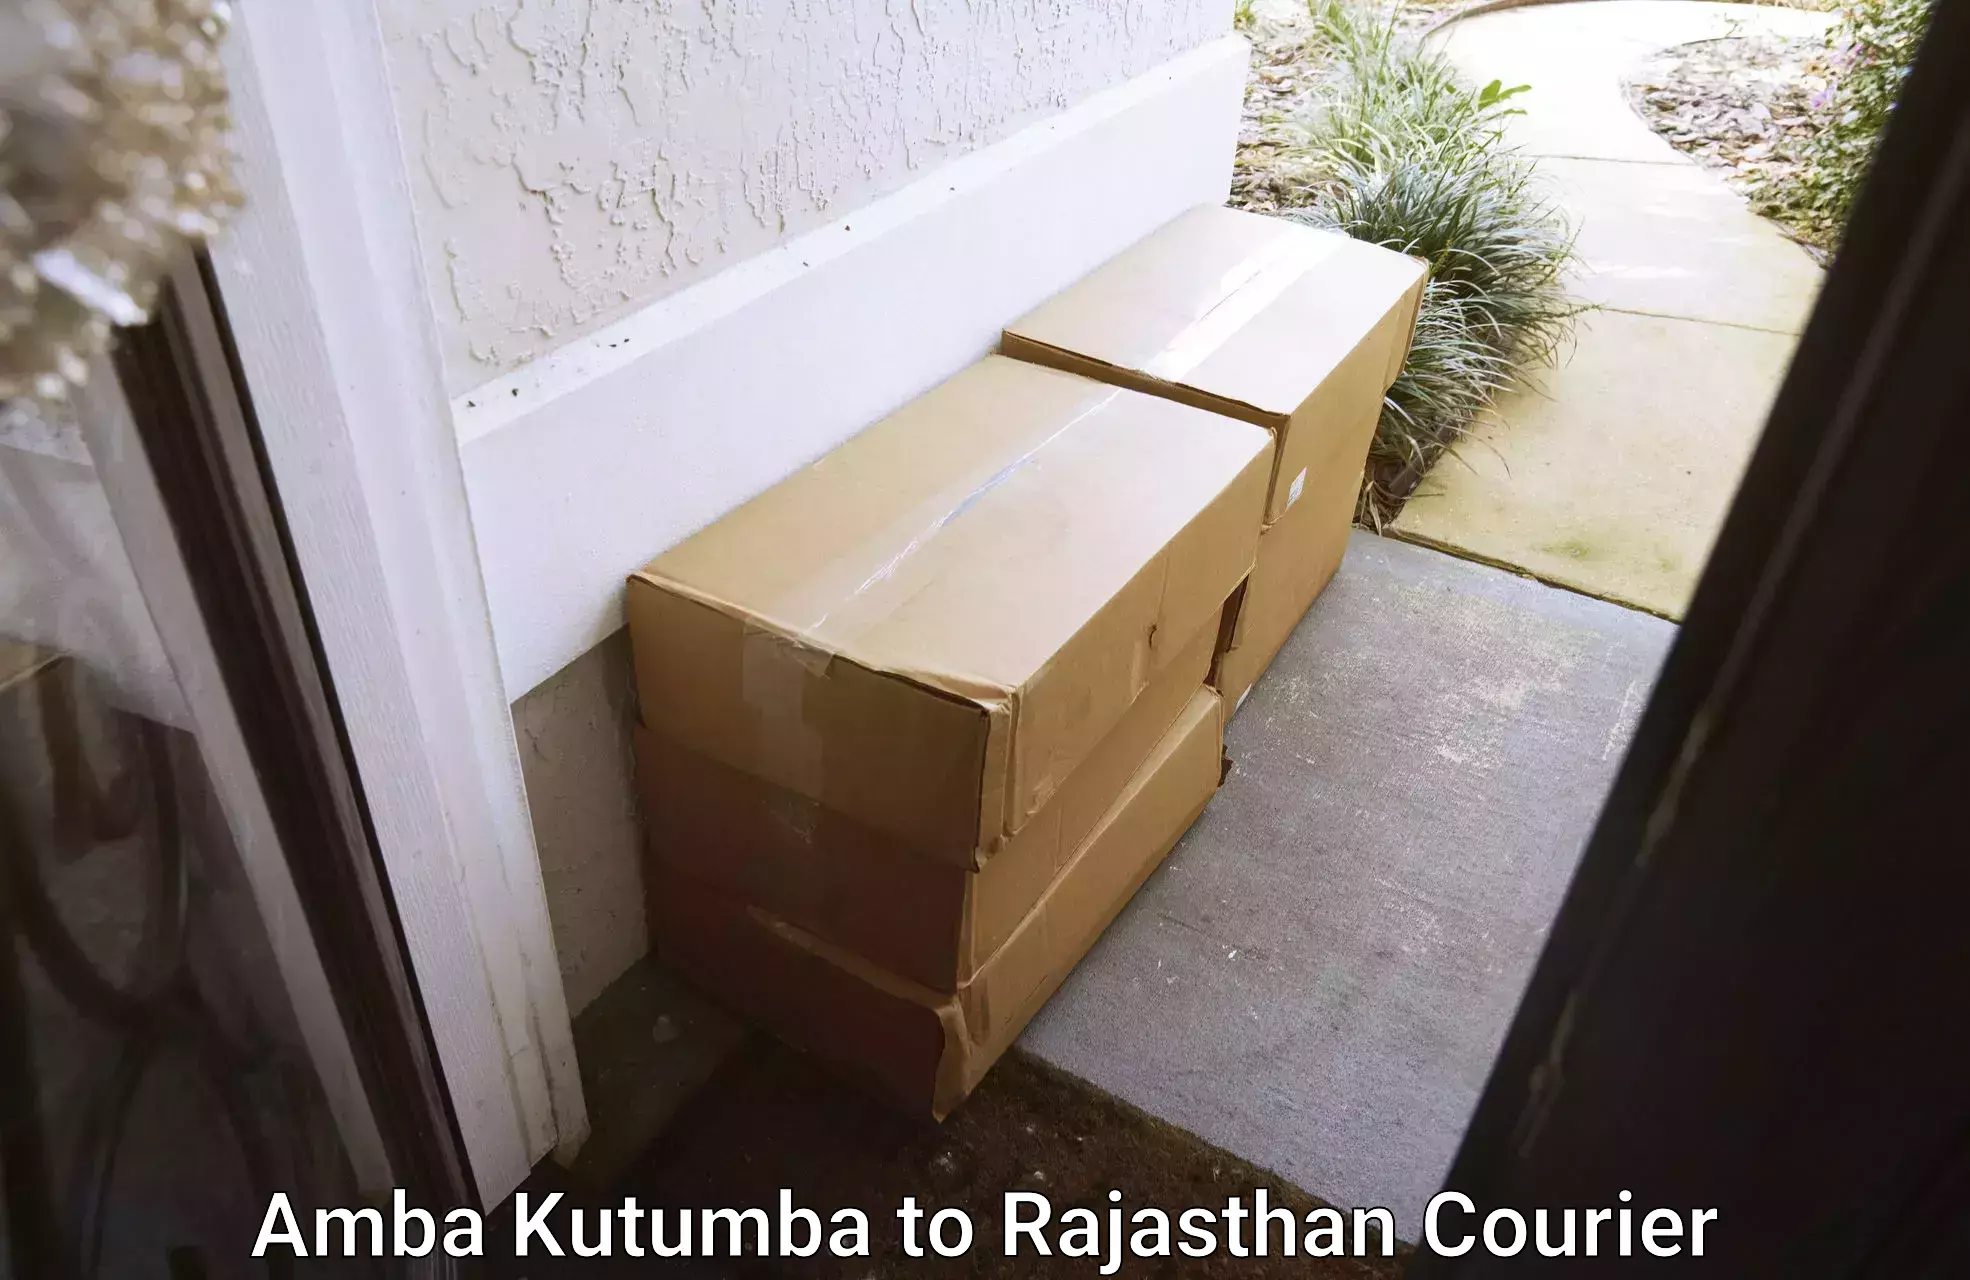 Professional moving company Amba Kutumba to Chaumahla